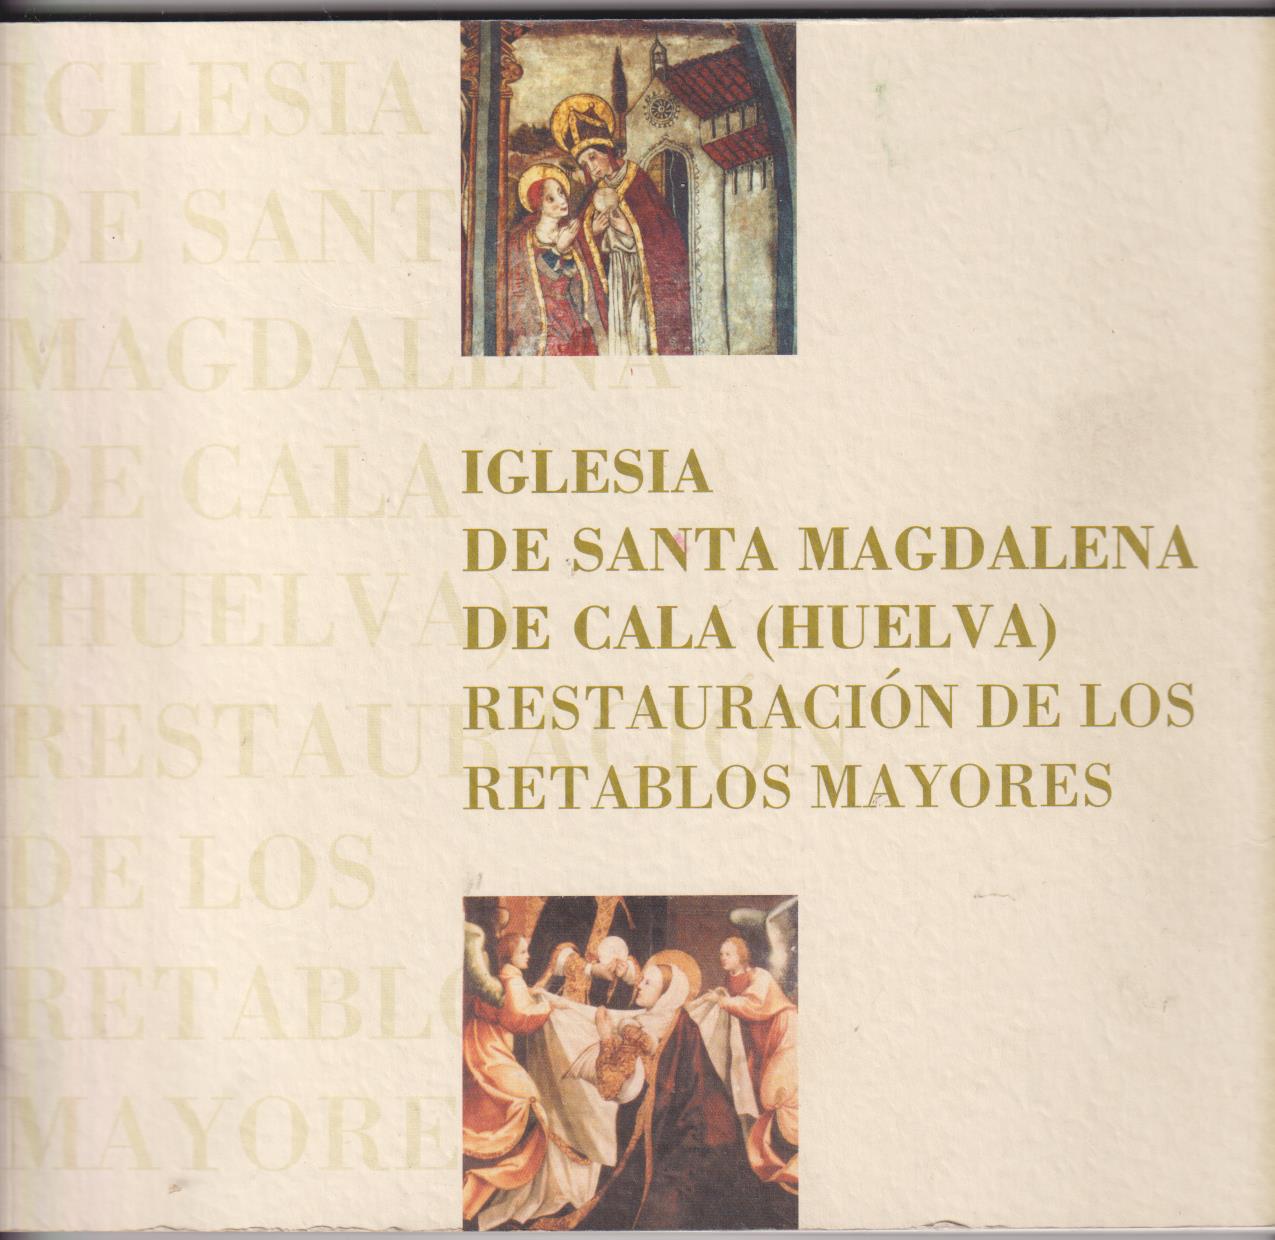 Iglesia de Santa magdalena de Cala (Huelva) Restauración de los Retablos Mayores. Junta de Andalucía 2003